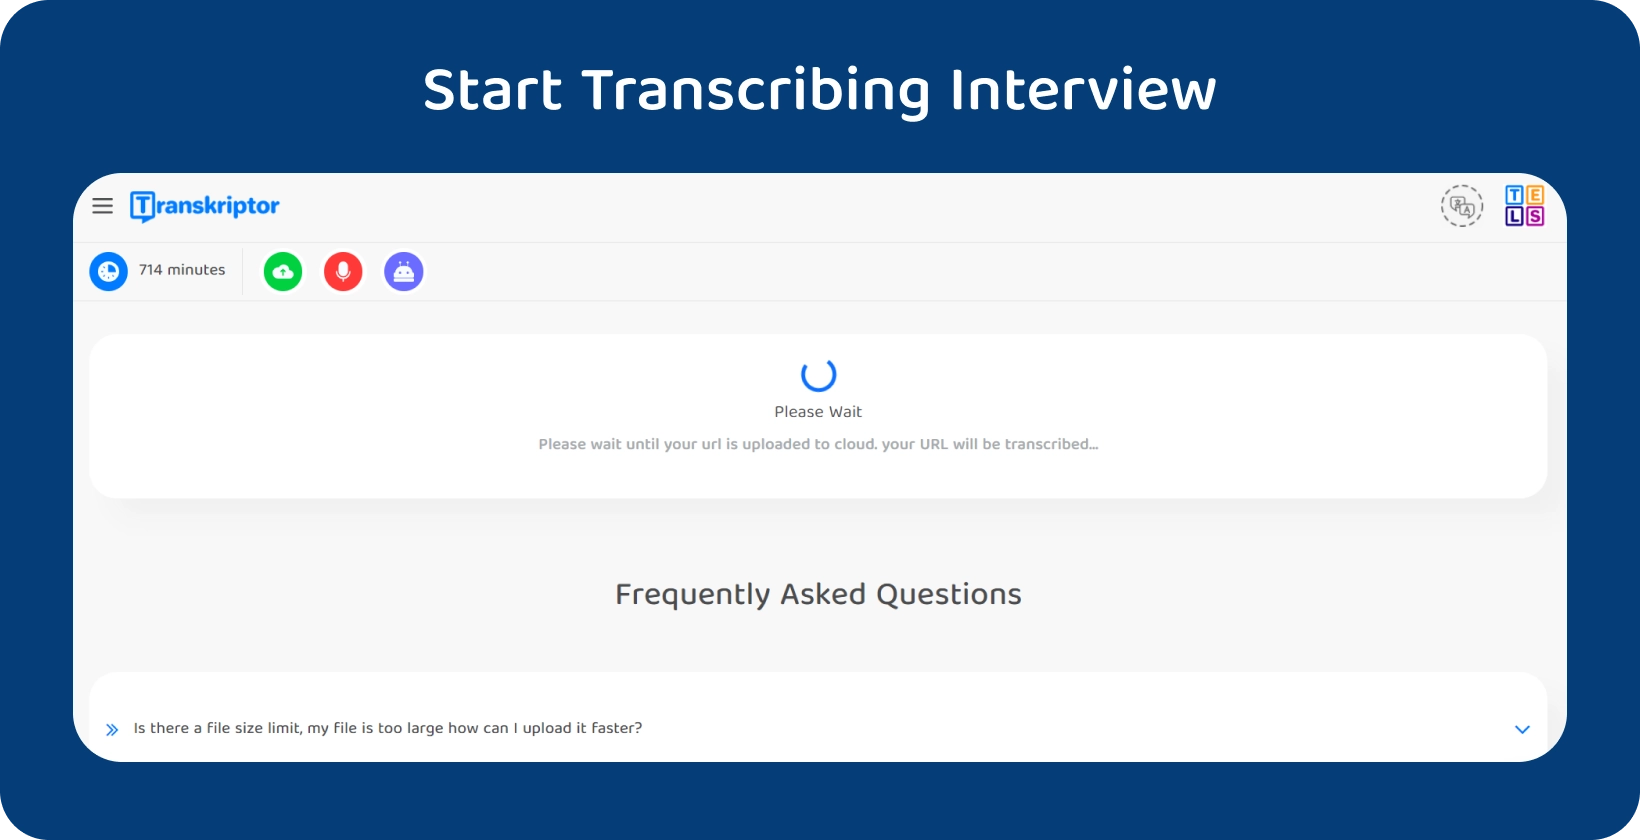 Start afhandlingstransskription med Transkriptor, der viser et 714-minutters interview, der venter på behandling.